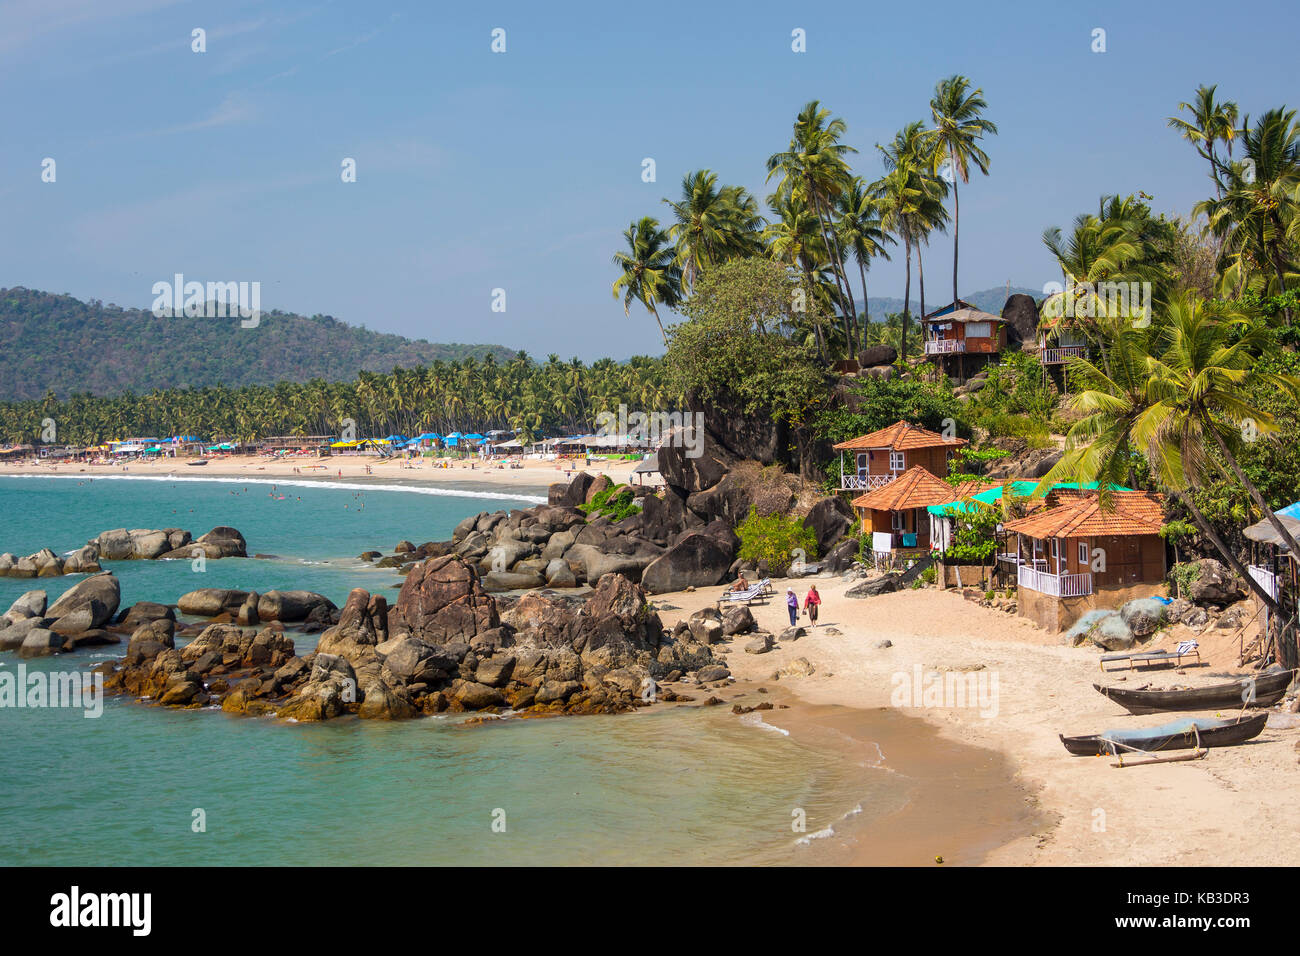 Inde, Goa, plage de Palolem, palmiers et bungalows, vue d'ensemble Banque D'Images